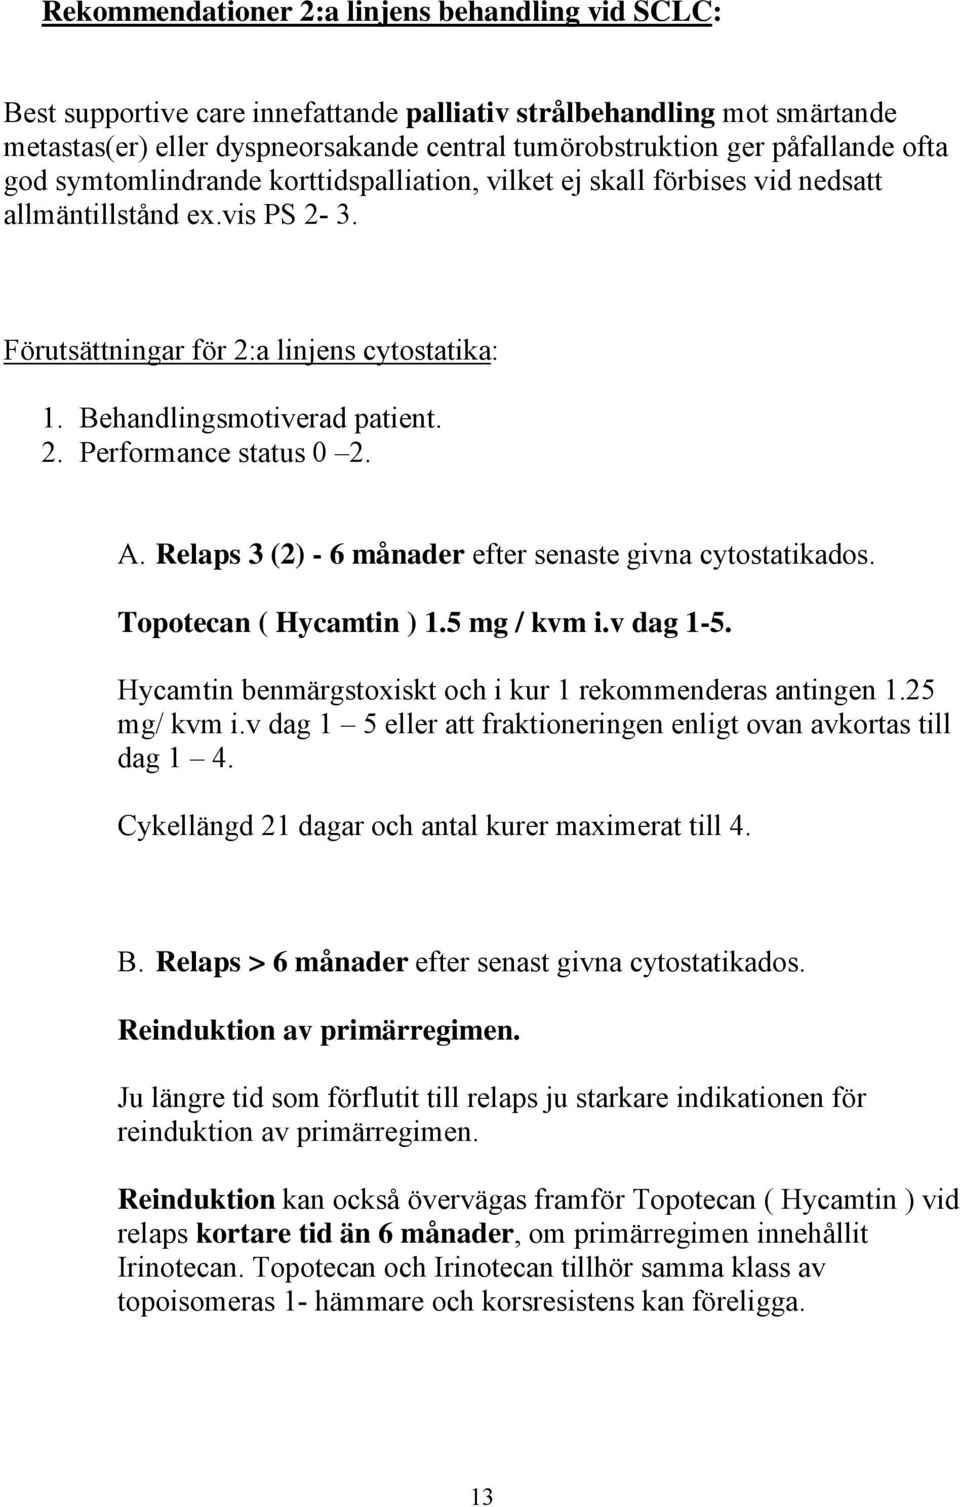 A. Relaps 3 (2) - 6 månader efter senaste givna cytostatikados. Topotecan ( Hycamtin ) 1.5 mg / kvm i.v dag 1-5. Hycamtin benmärgstoxiskt och i kur 1 rekommenderas antingen 1.25 mg/ kvm i.